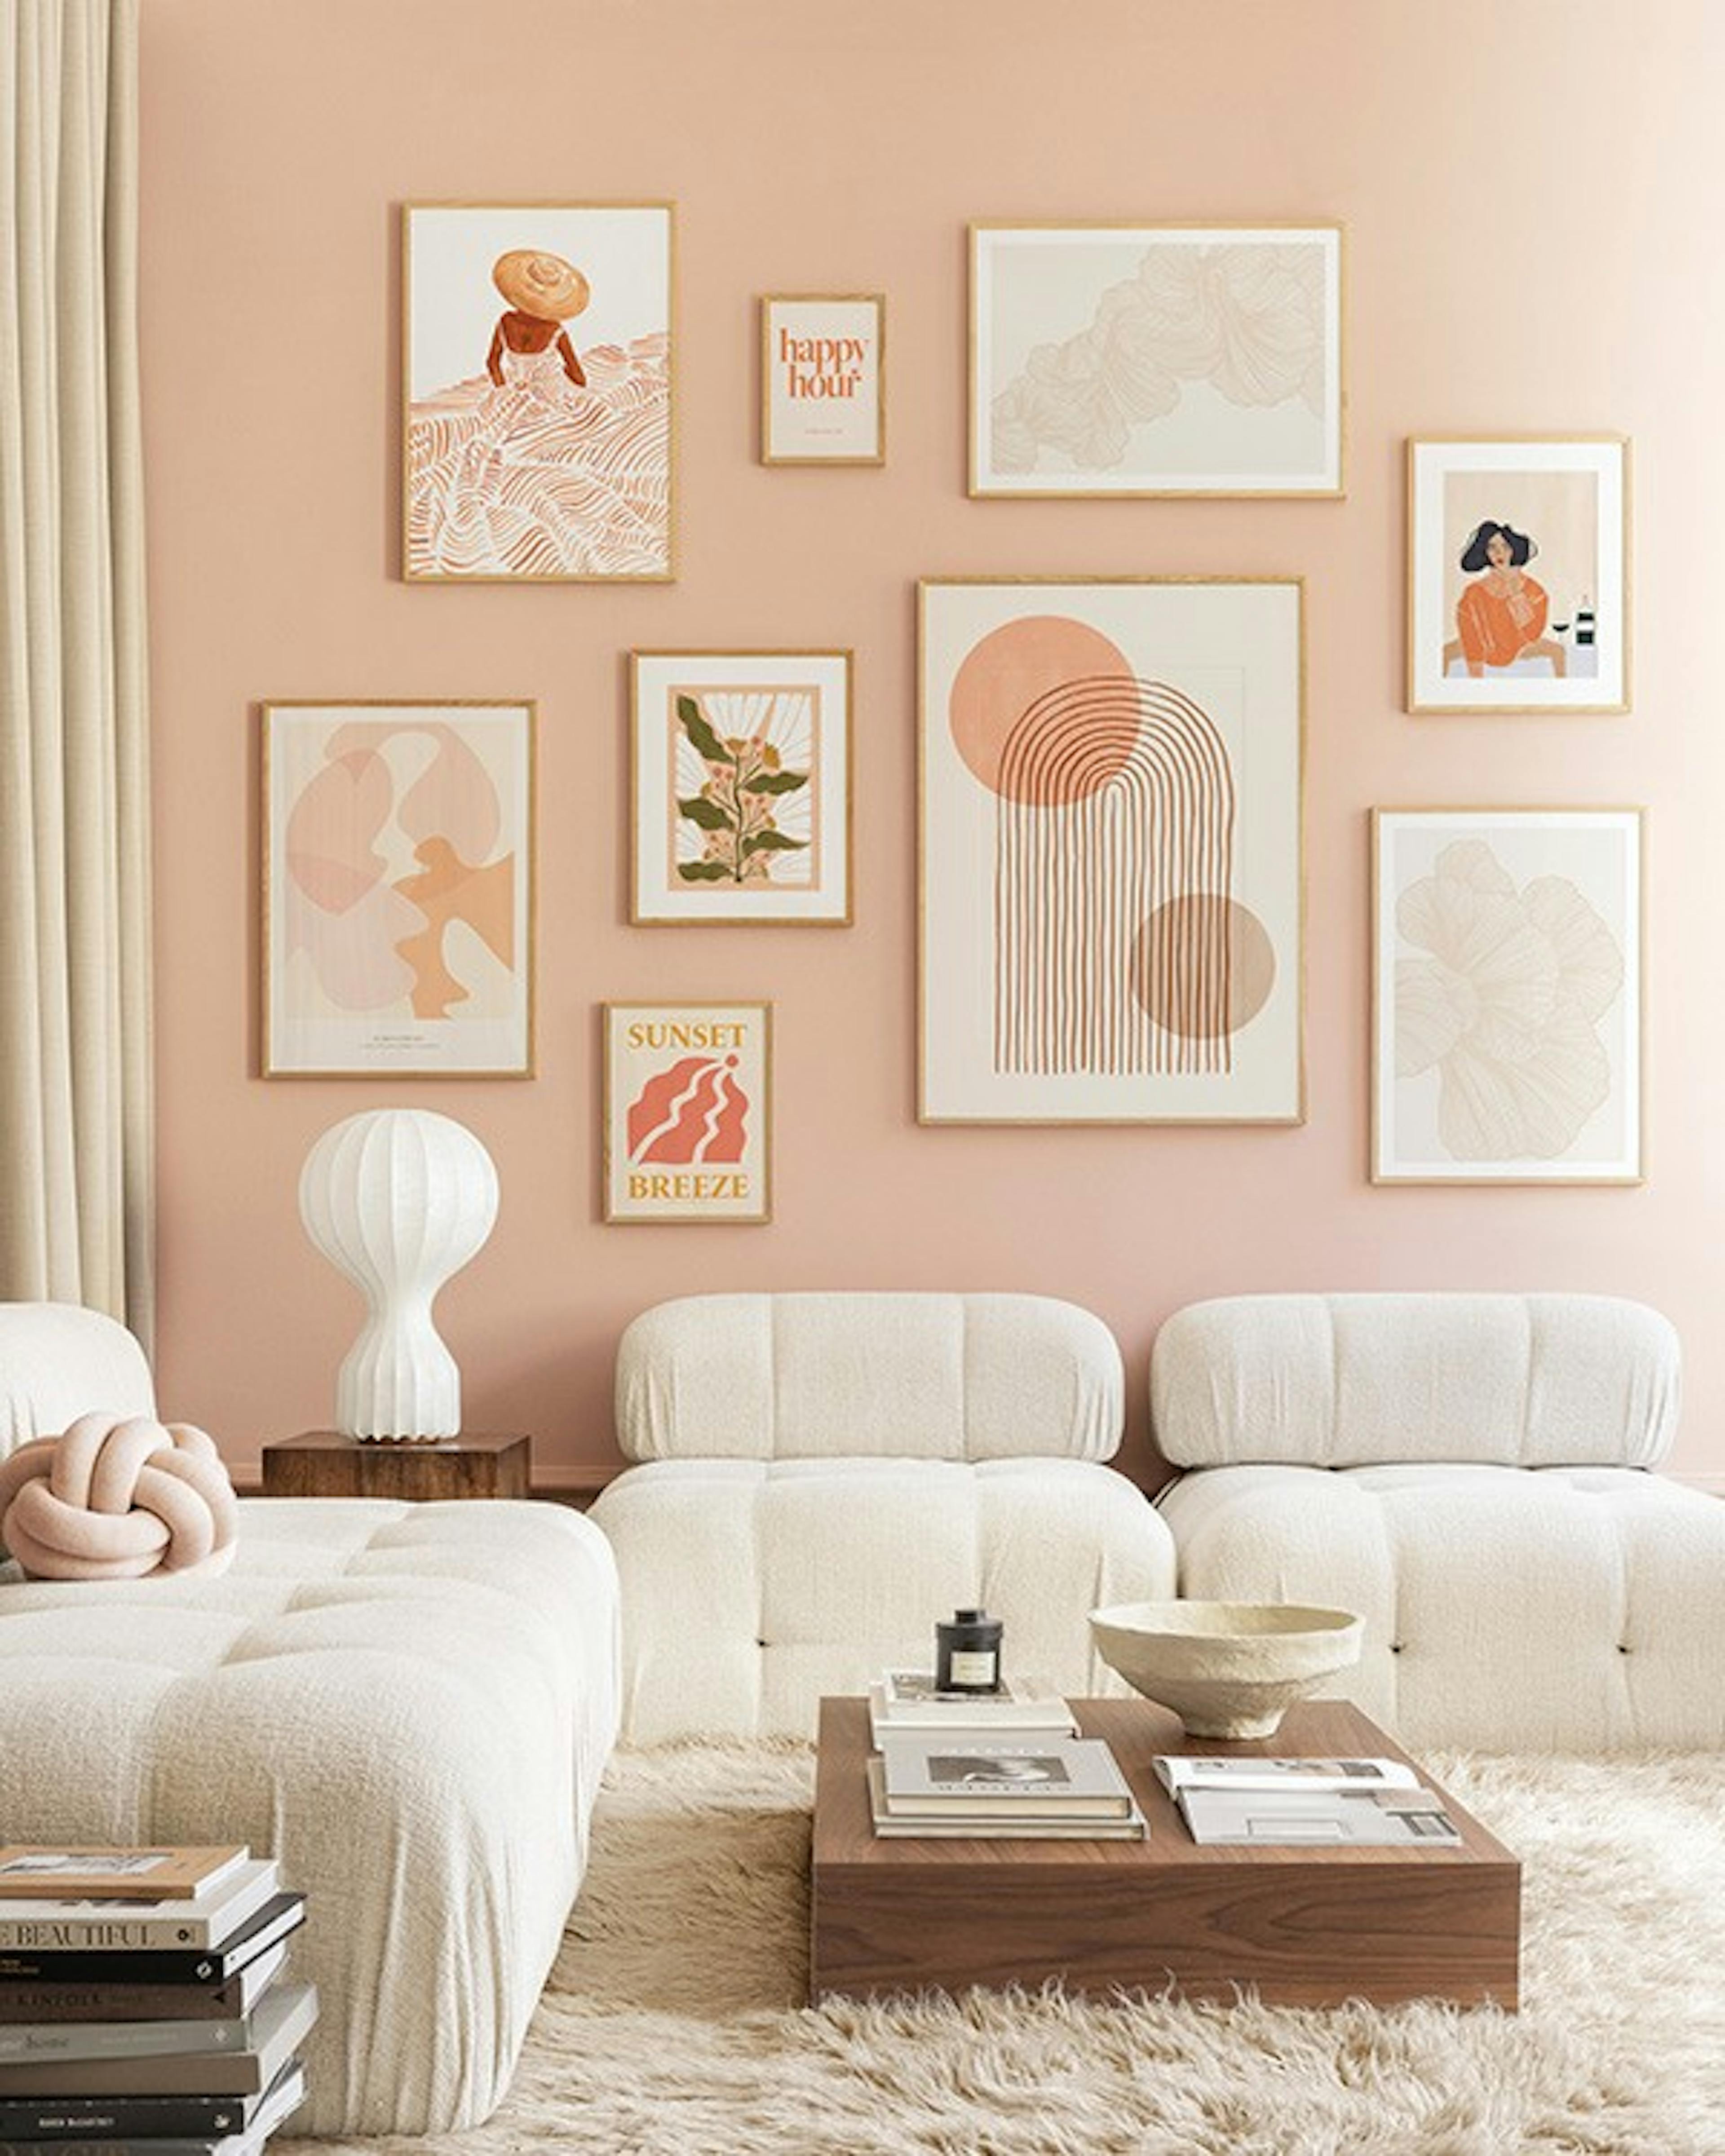 Peachy livingroom galería de pared